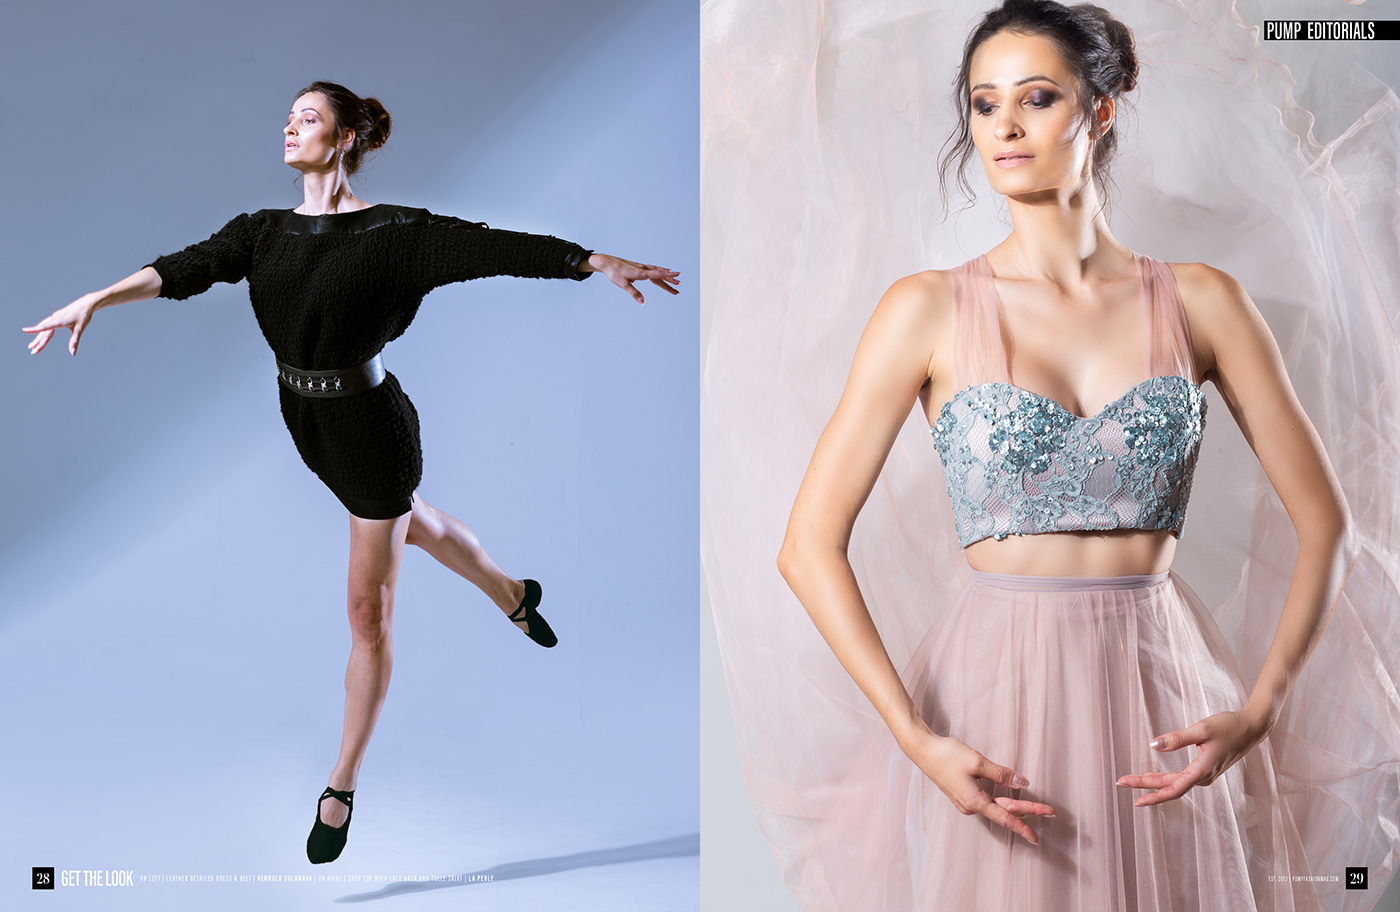 ballerina ballet Creative Director fashion editorial fashion photography Fashion Stylist MUA photographer Photography 